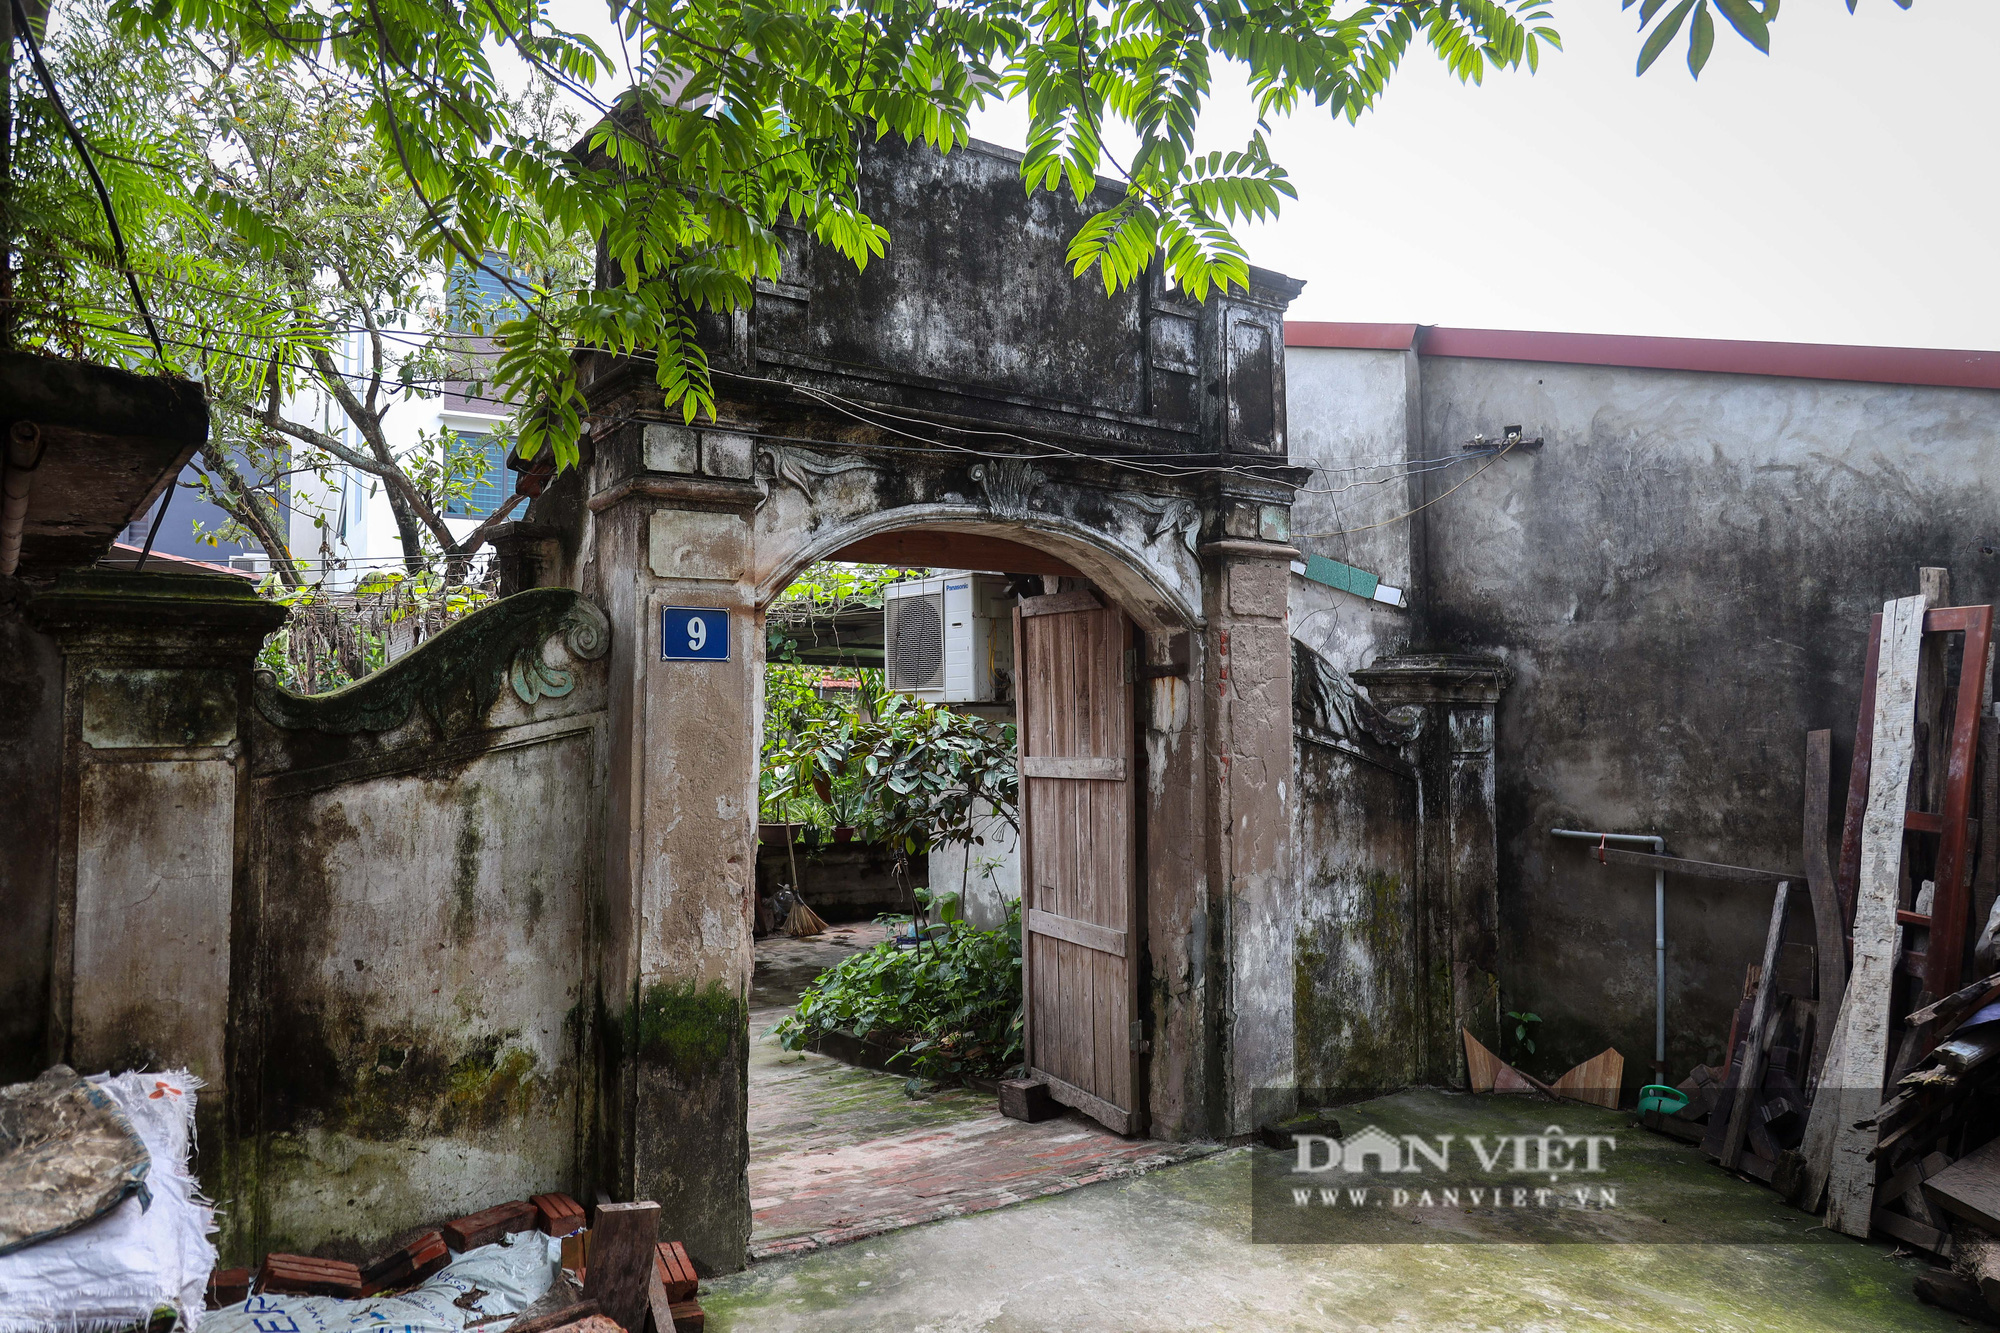 Kỳ lạ ngôi nhà xây mất 1 đêm, hơn 300 năm vẫn vững chãi ở Hà Nội - Ảnh 1.